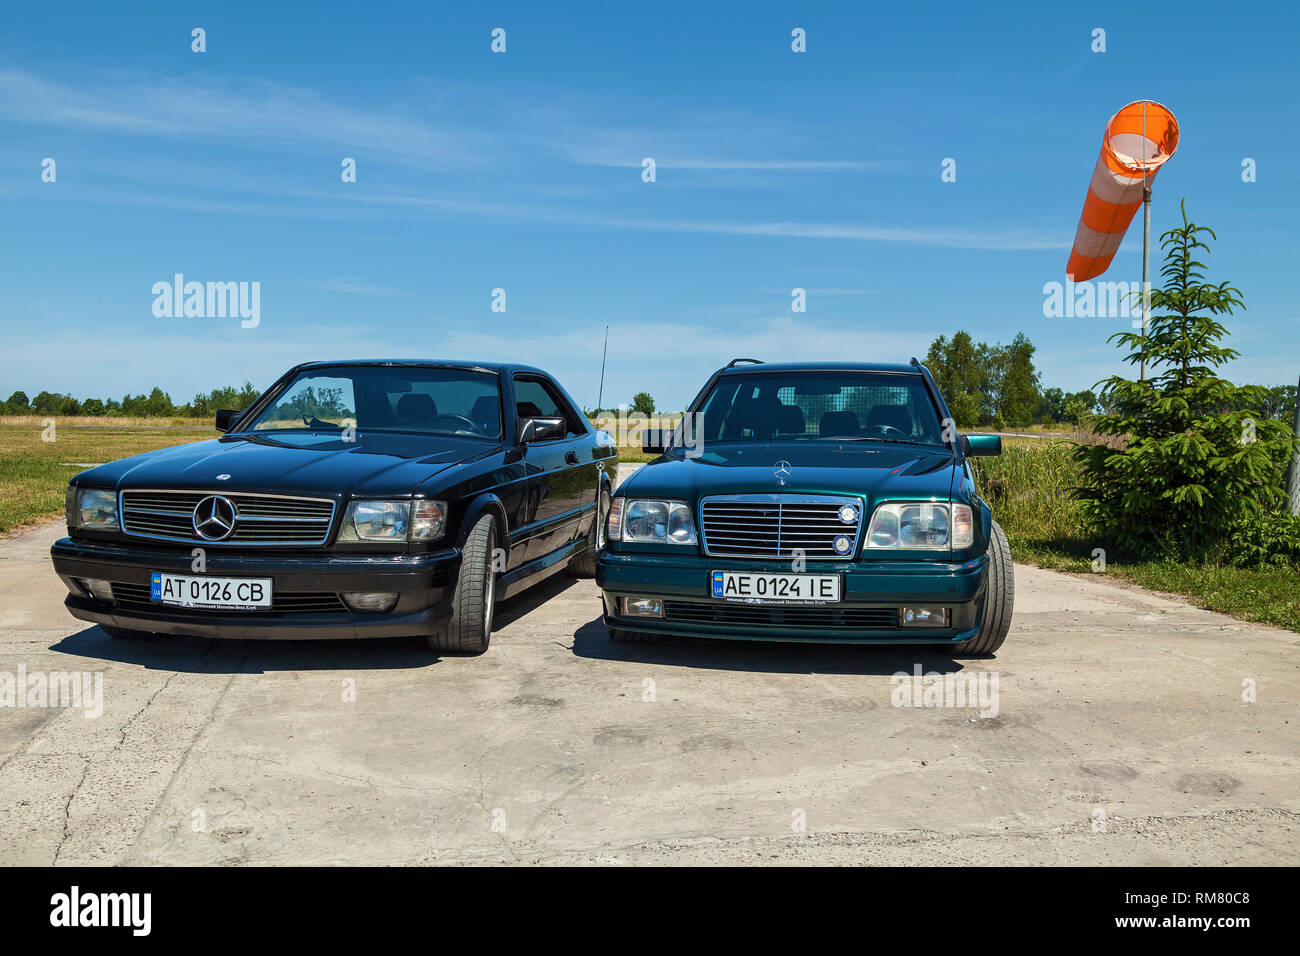 Mercedes Benz C Class Sedan Stockfotos und -bilder Kaufen - Alamy